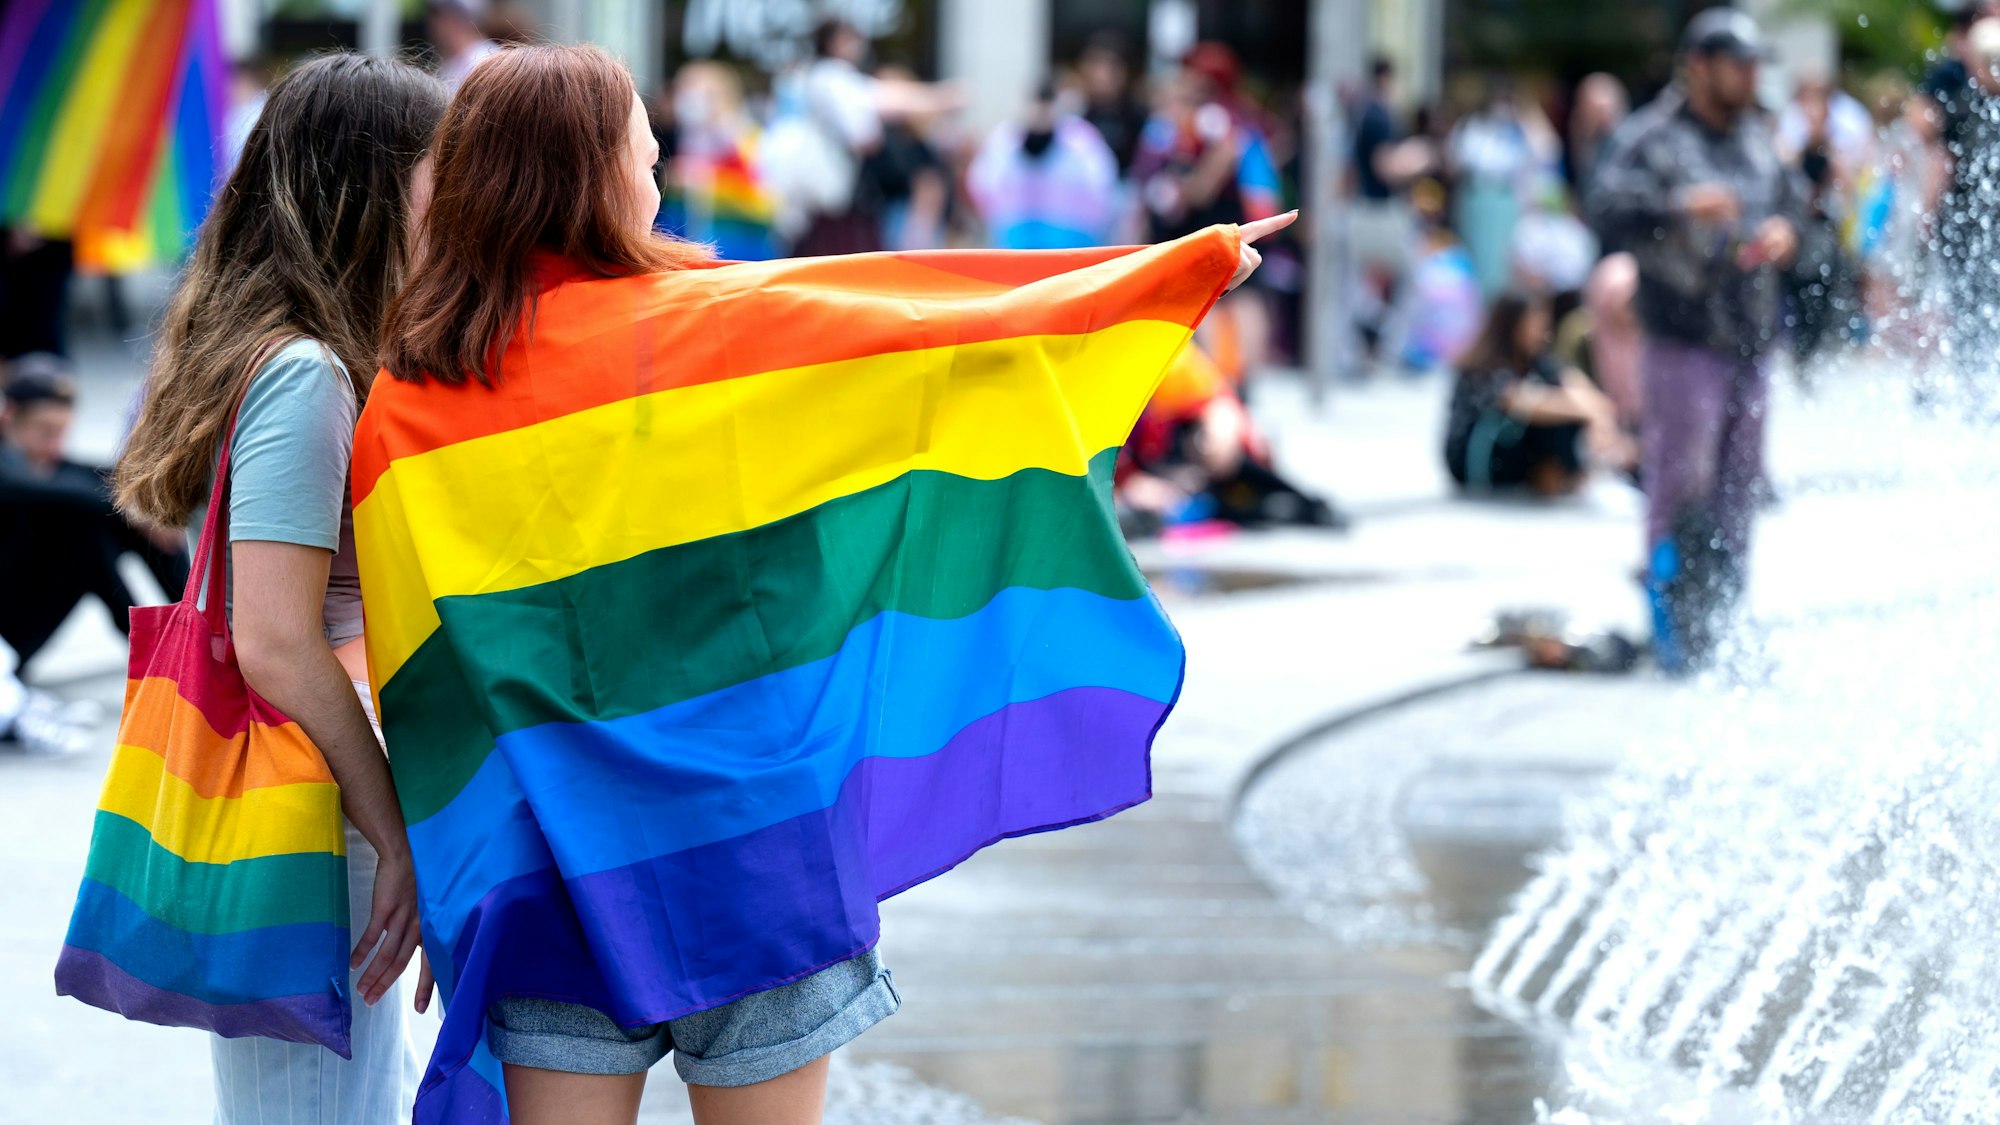 Das undatierte Symbolfoto zeigt zwei Frauen mit Regenbogentasche bzw. einer umgehängten Fahne in Regenbogenfarben. Hinter ihnen befinden sich weitere Menschen.